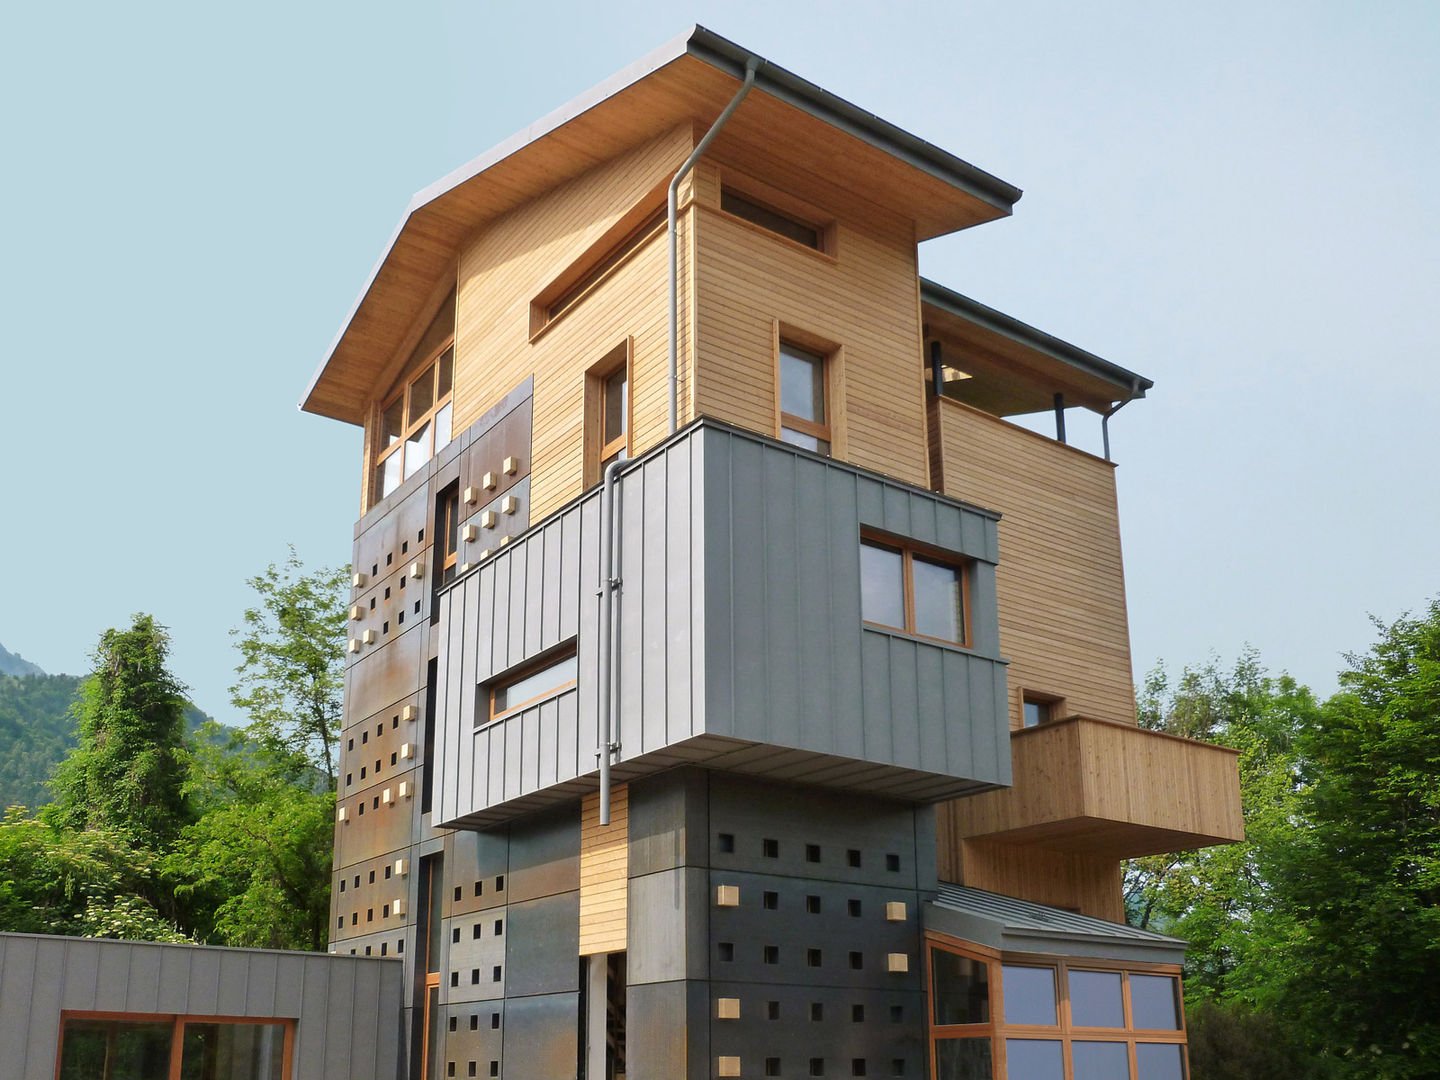 Villa in legno "Il Roccolo" - Clusone (BG), Marlegno Marlegno Modern Houses Wood Wood effect